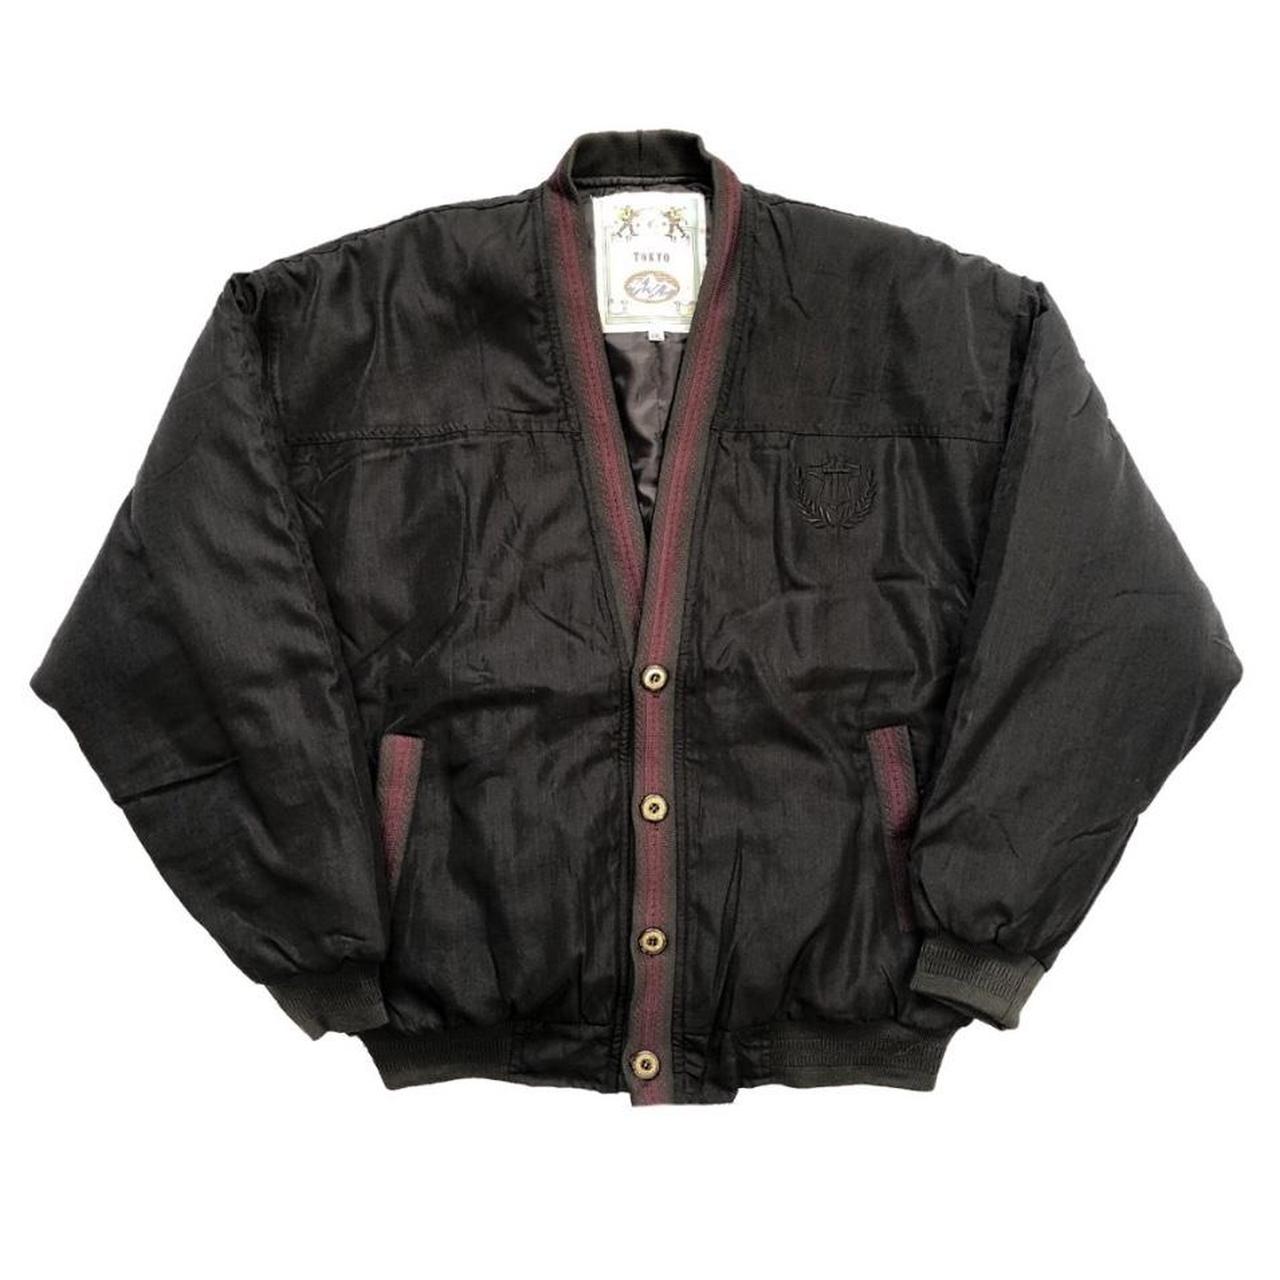 Vintage Black Bomber Jacket | SizeXXL, fits more... - Depop